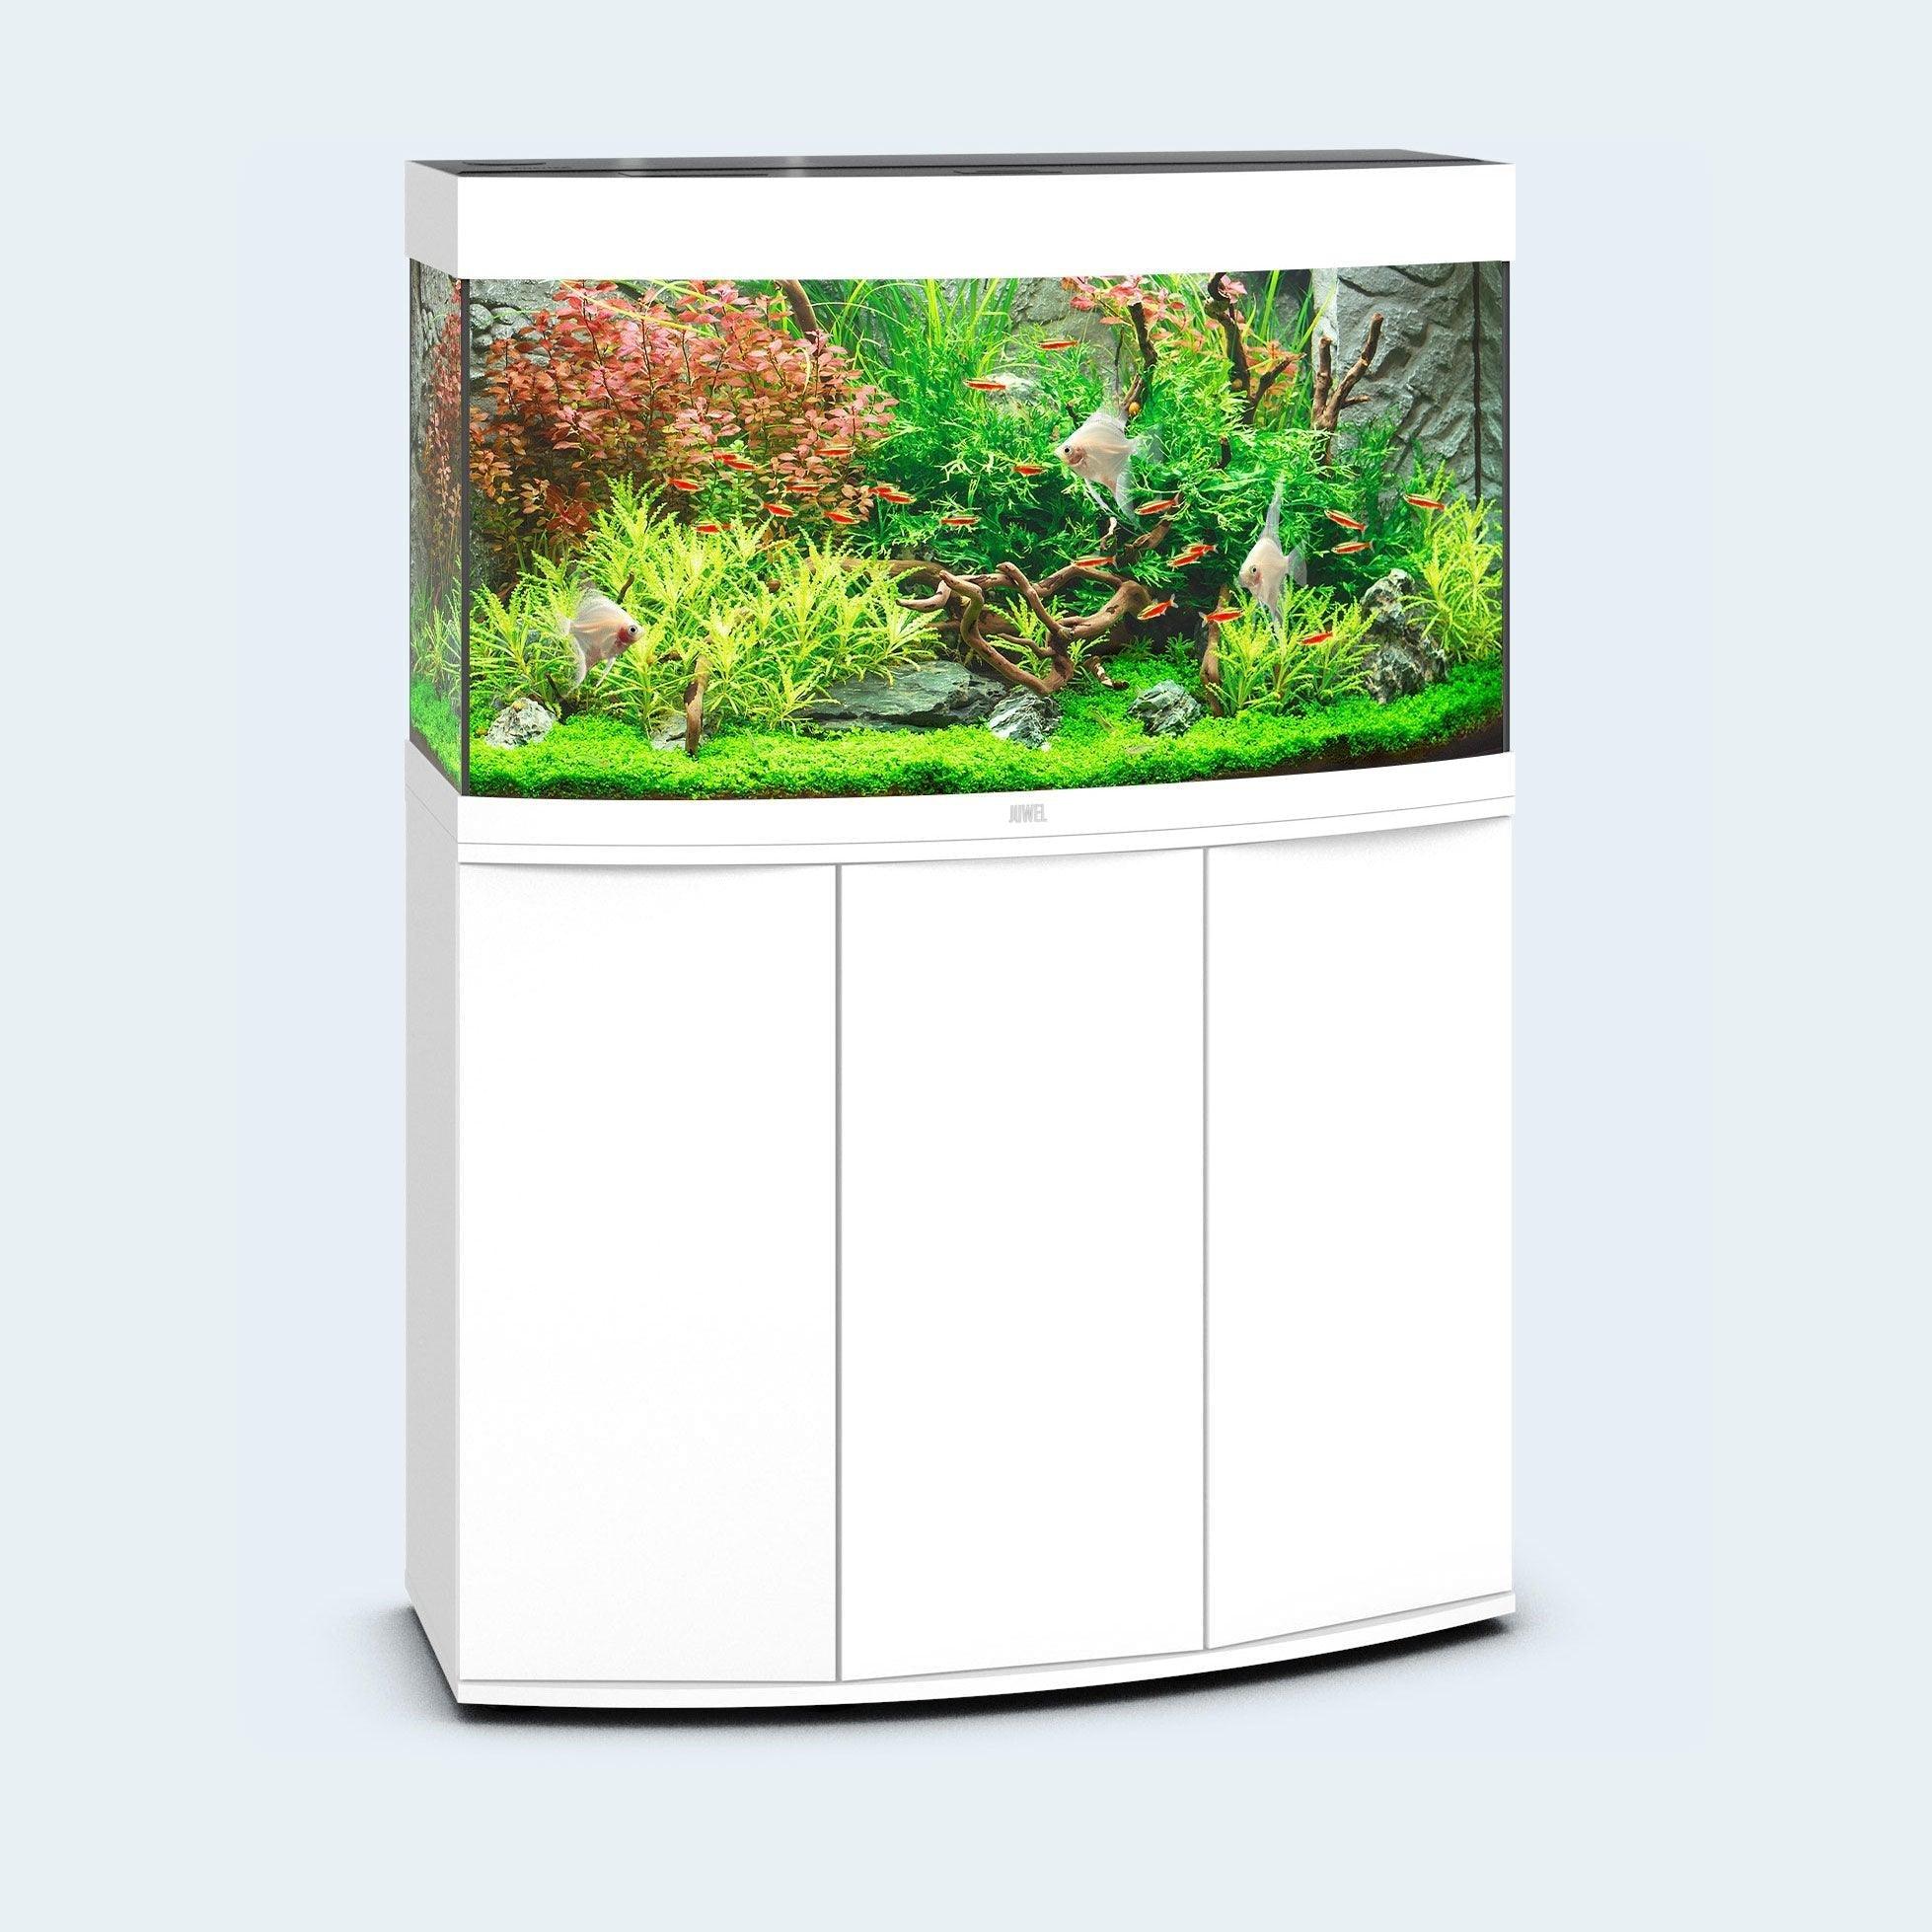 Juwel Vision 180 LED Aquarium and Cabinet - White